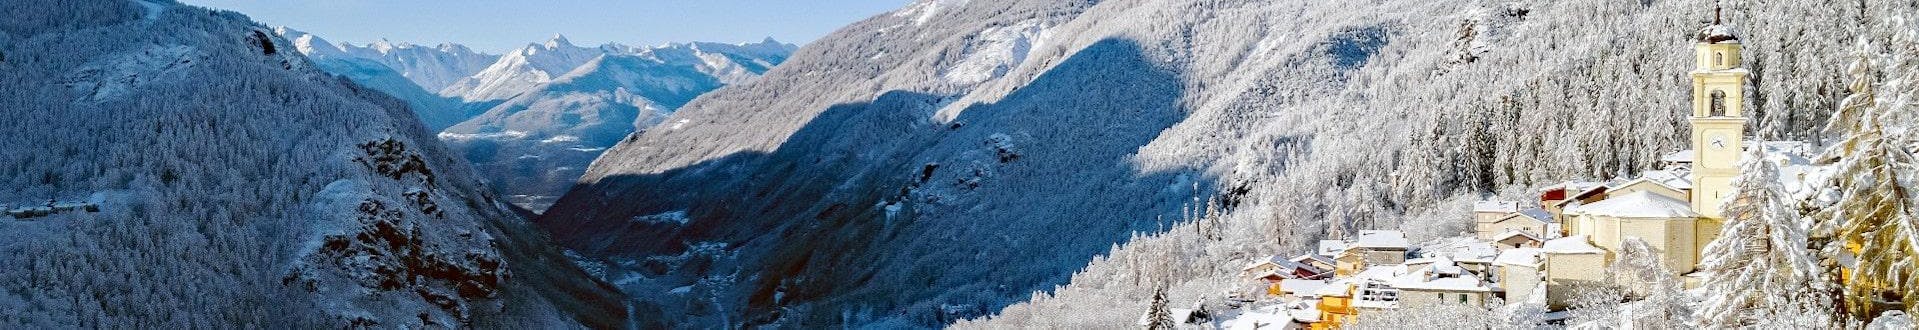 Un'immagine del paese di Primolo nella meravigliosa cornice di Valmalenco, luogo molto popolare tra gli sciatori che vogliono prenotare lezioni di sci con una delle scuole di sci locali.